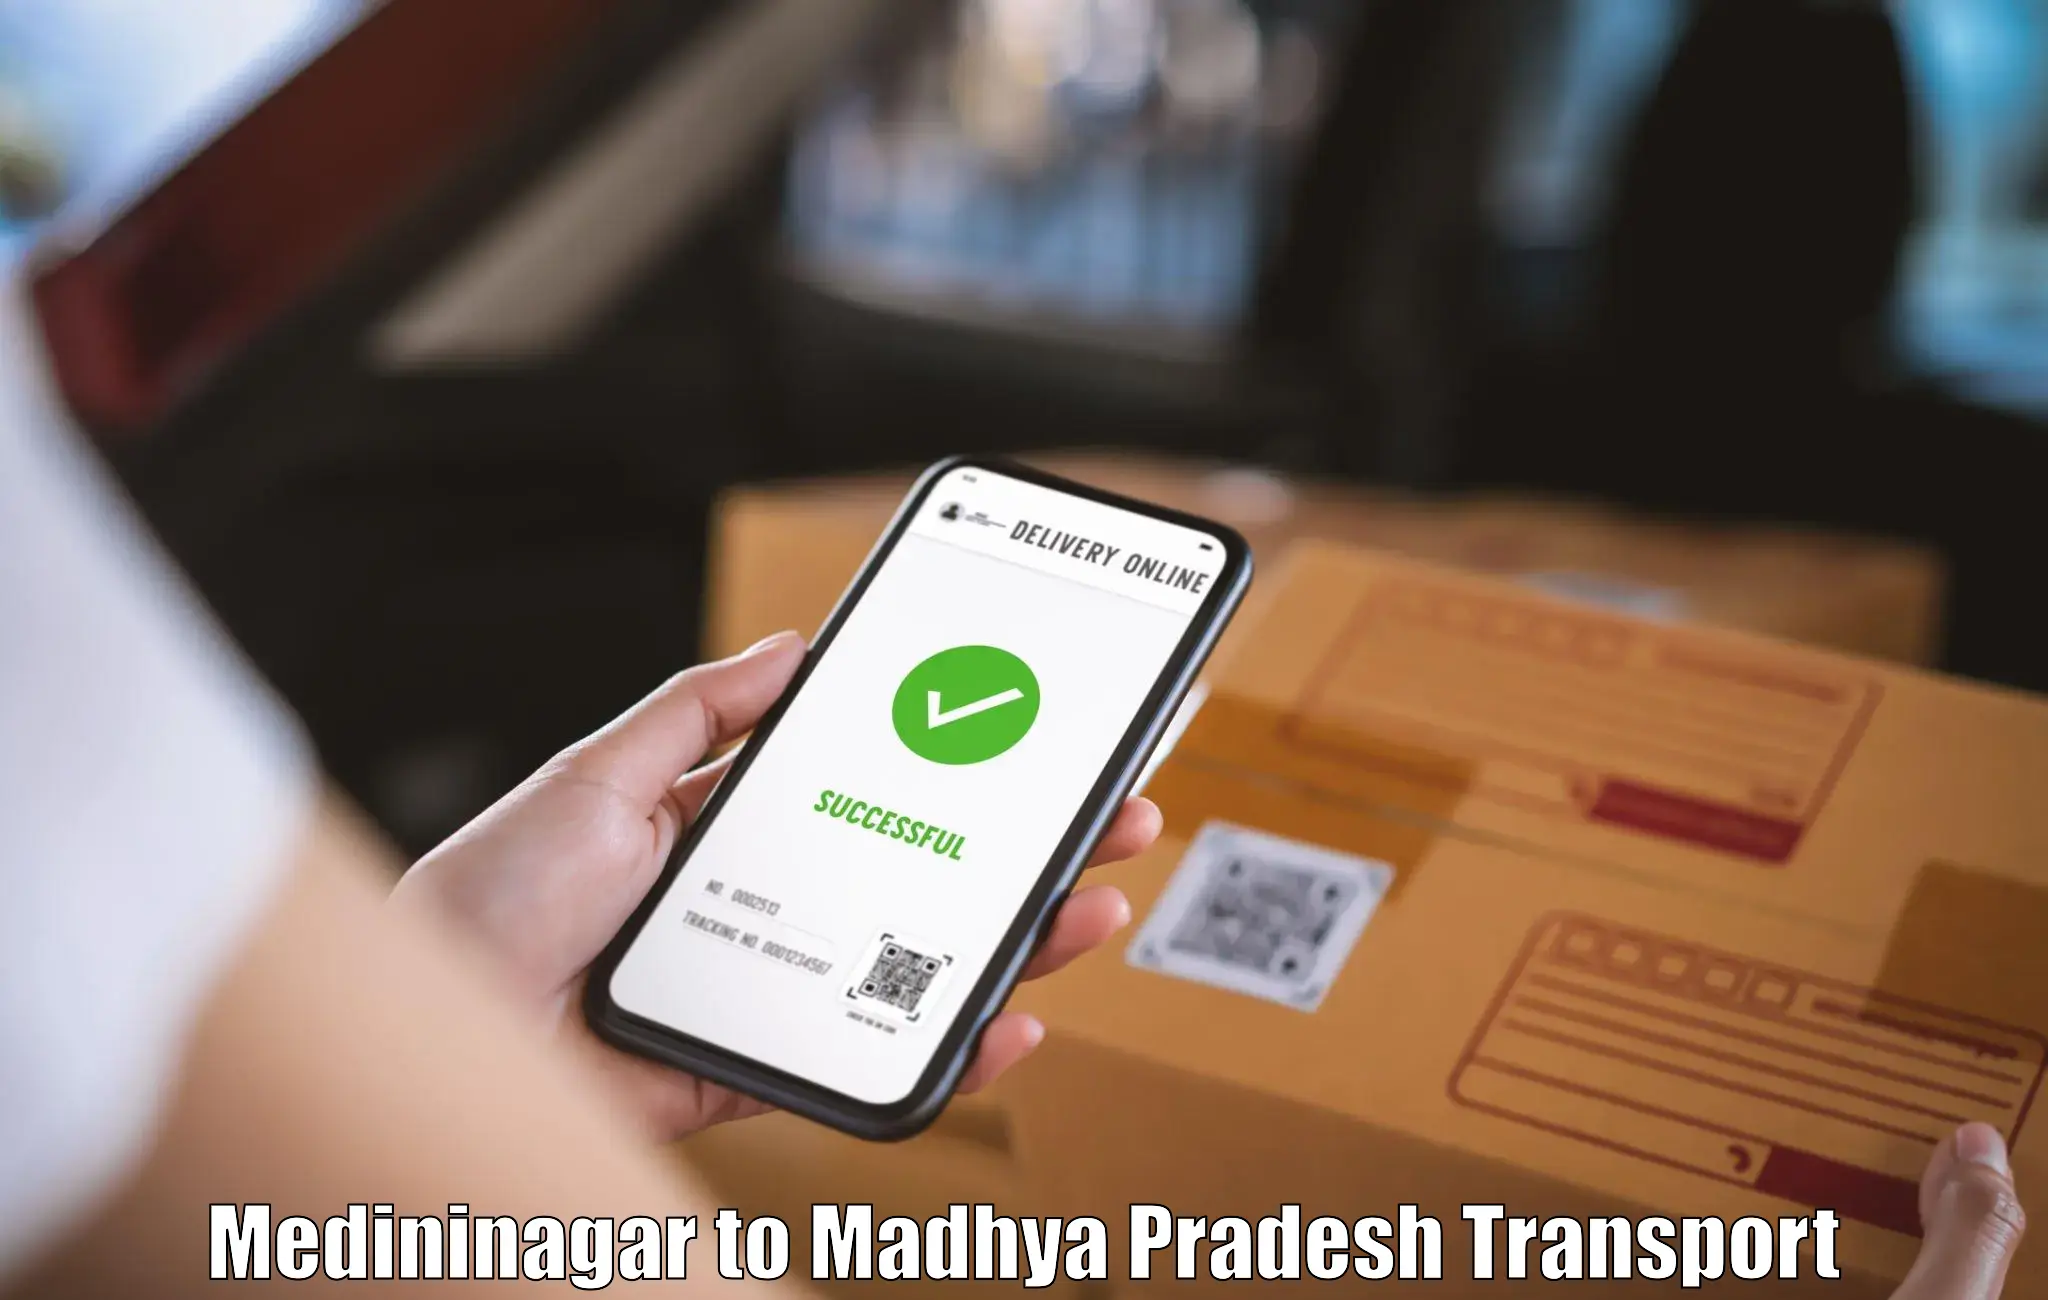 Shipping partner Medininagar to Chanderi